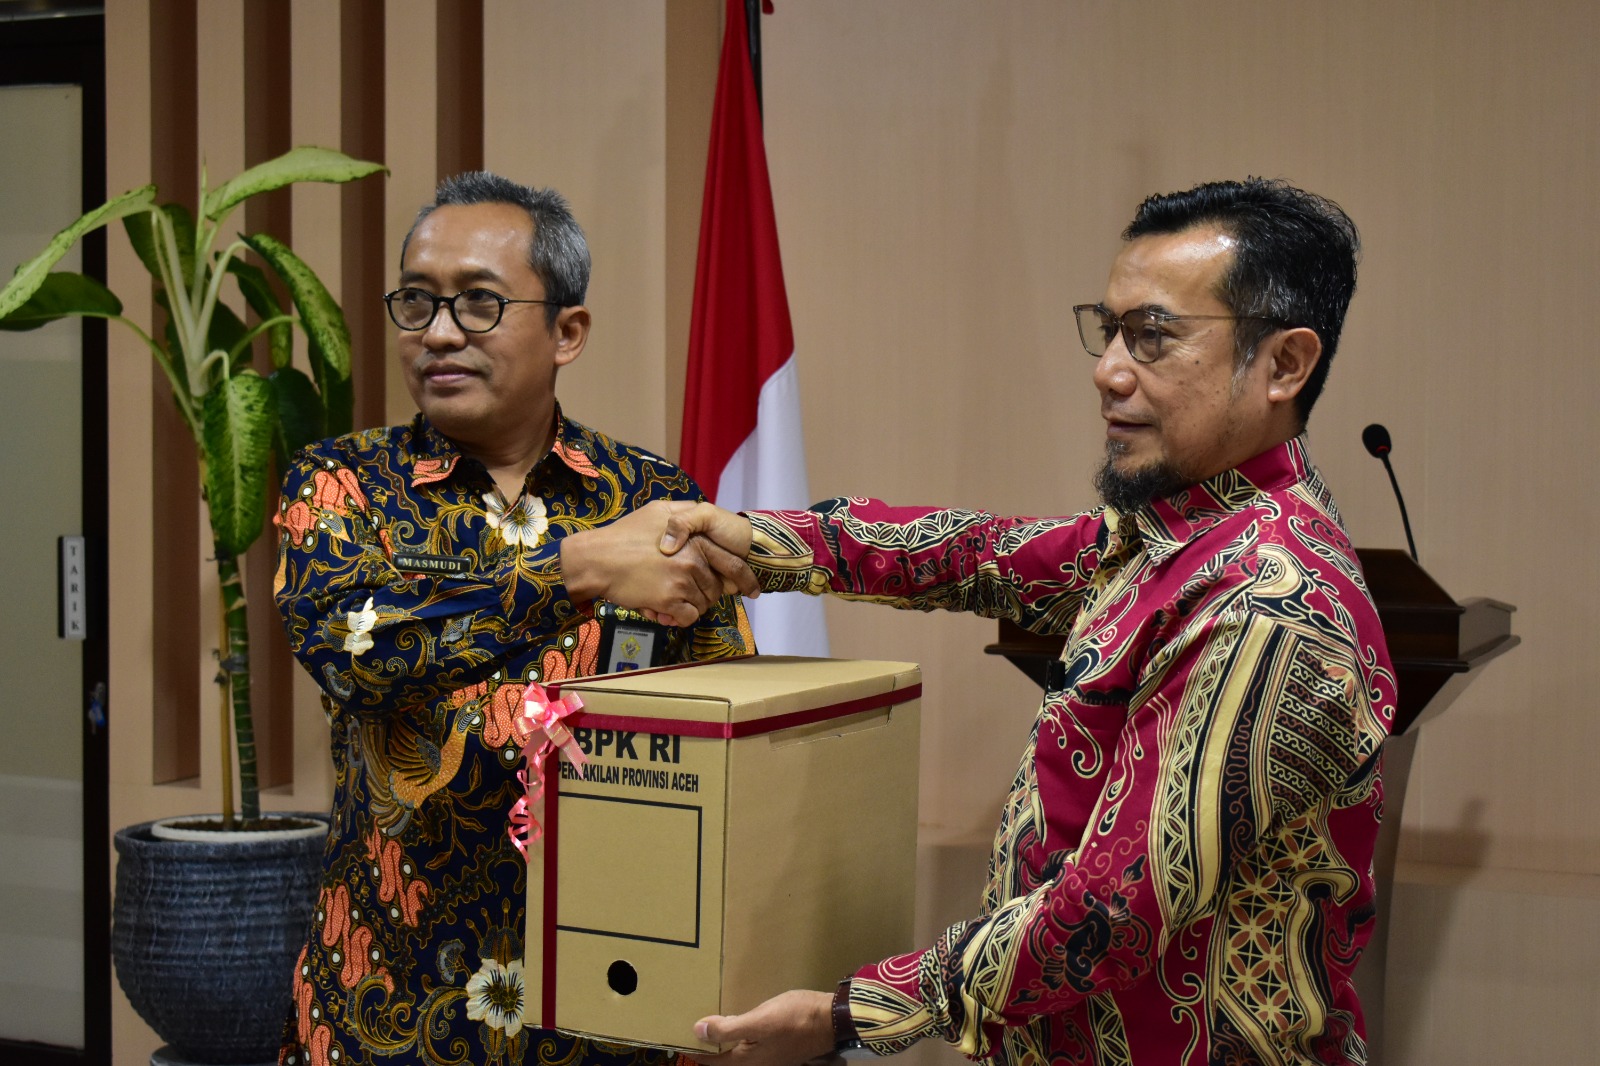 BPK RI Perwakilan Provinsi Aceh Kembali Serahkan Arsip Statis ke BAST